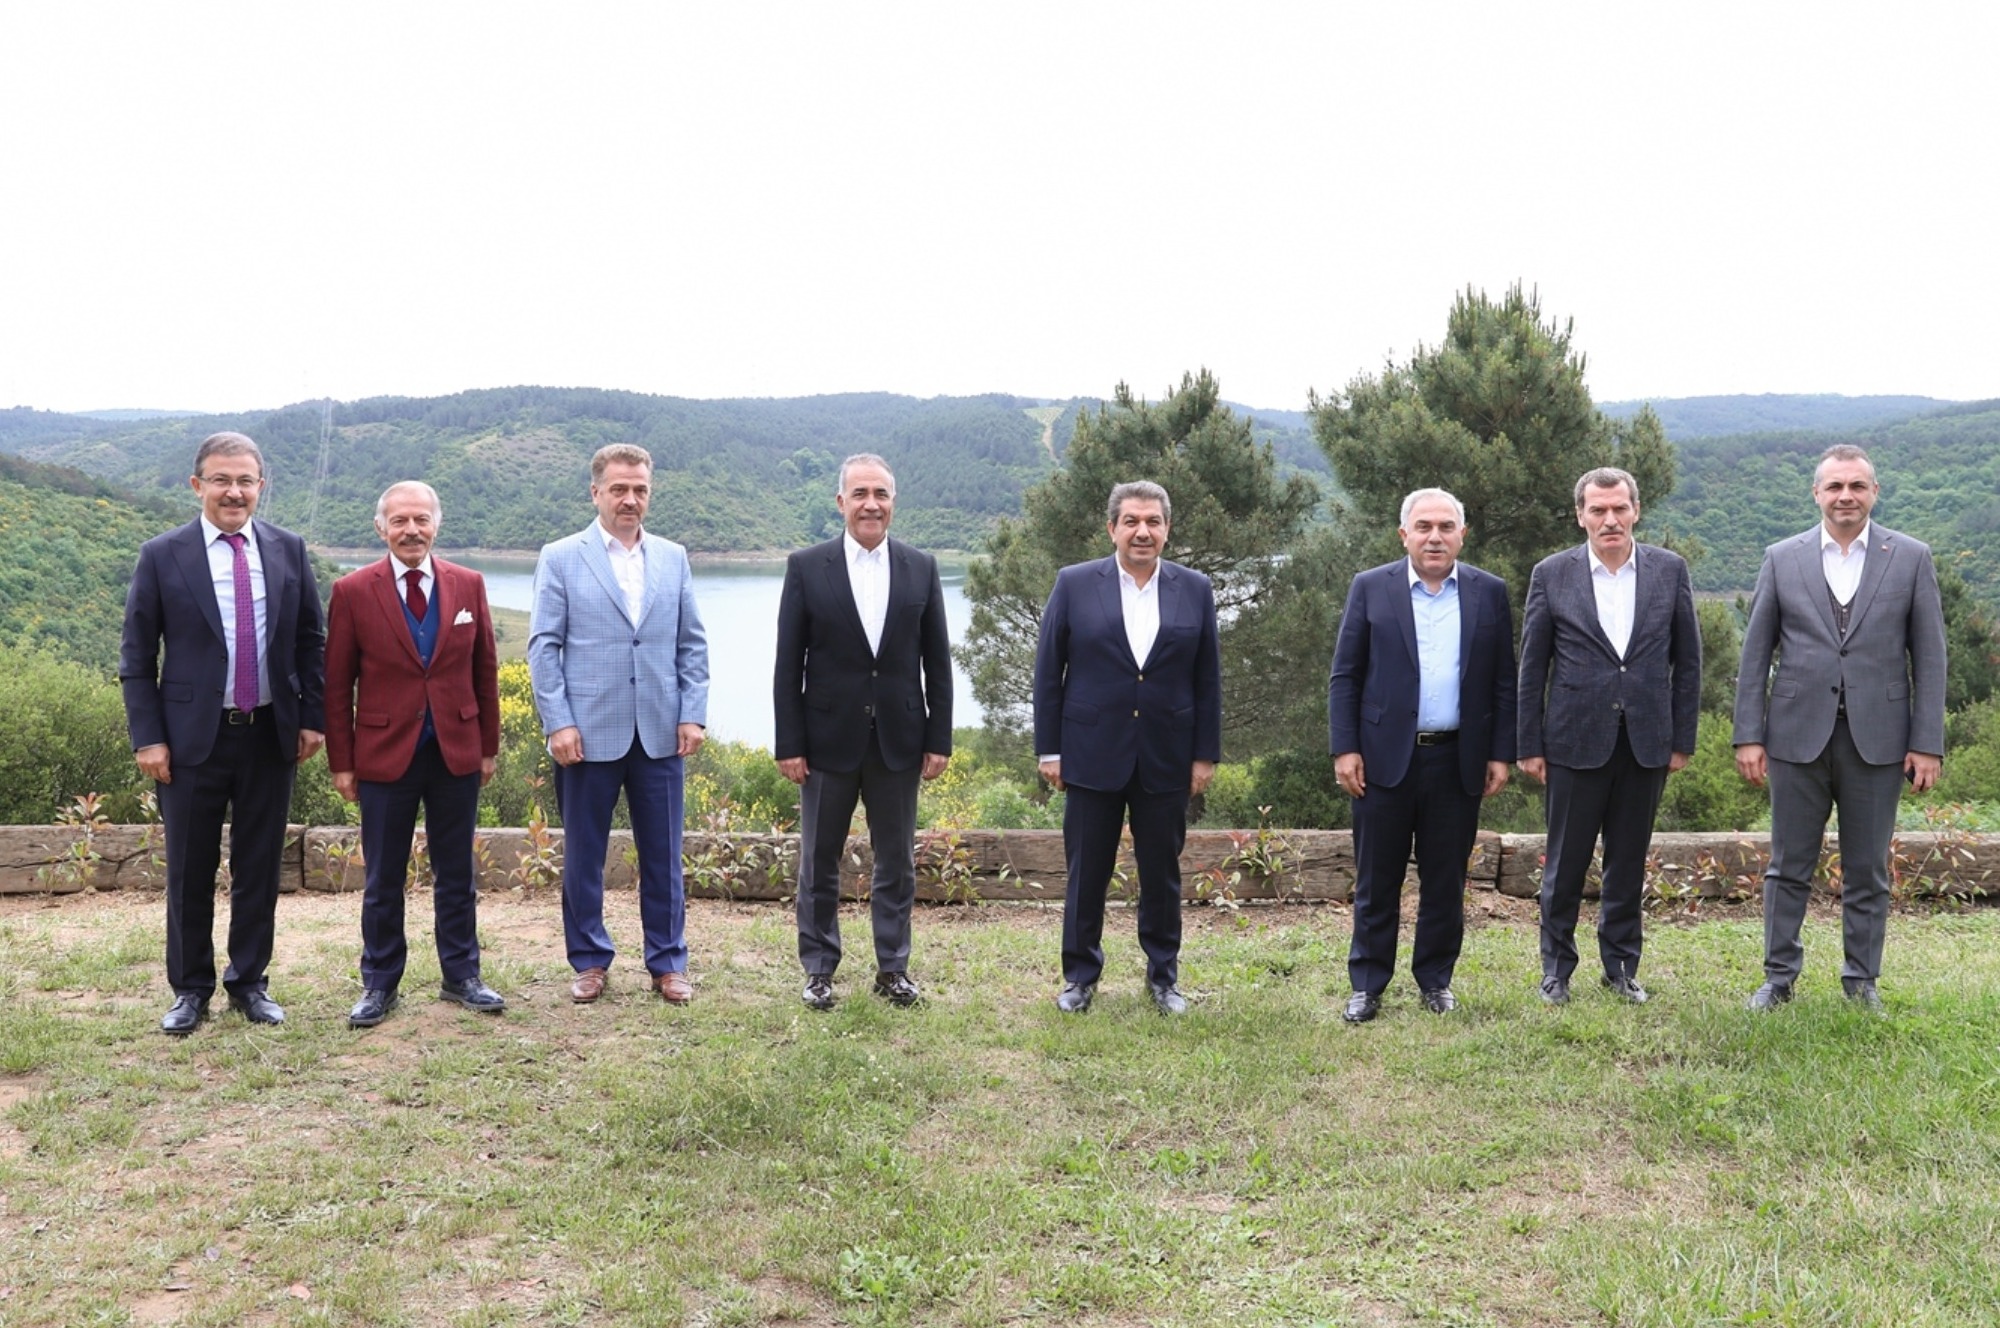 İstanbul İkinci Bölge Belediye Başkanları Toplantısı Sultangazi’de Gerçekleştirildi.